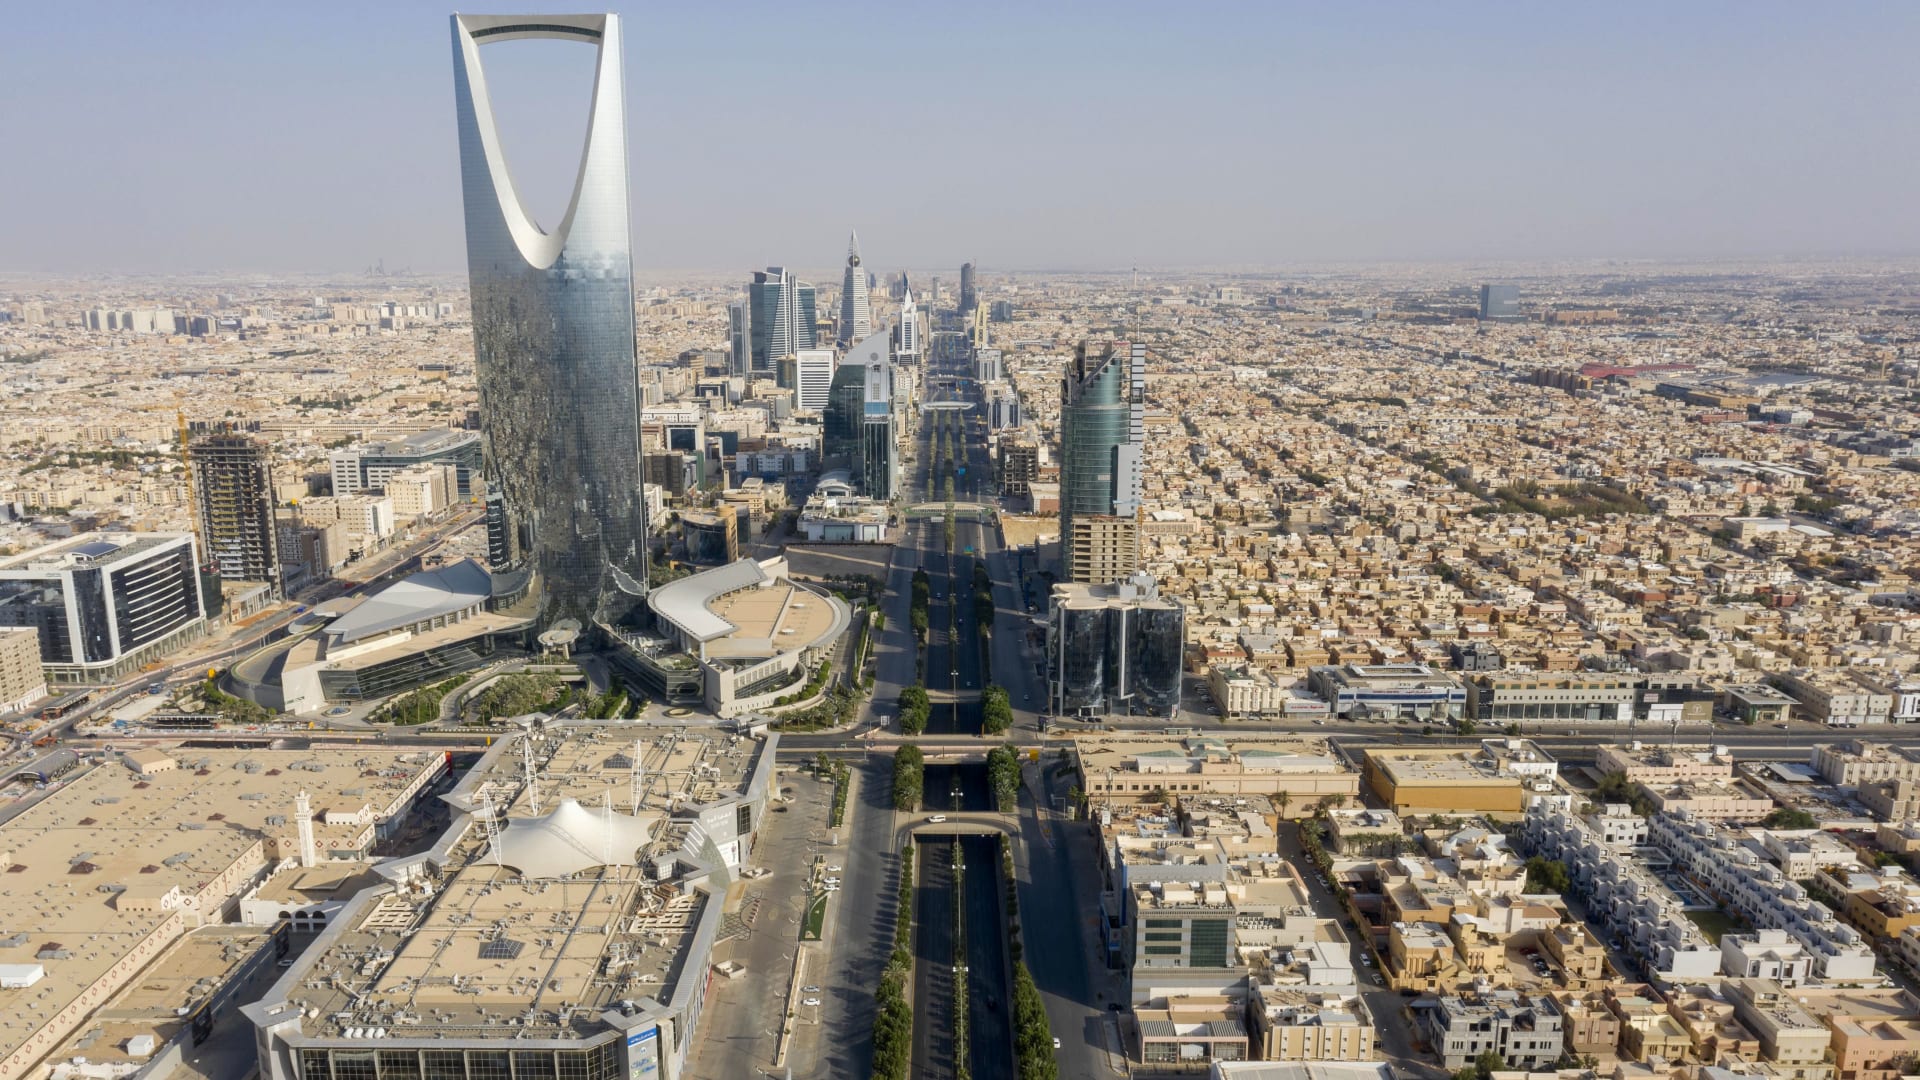 كيف يبدو مستقبل اقتصاد السعودية وهل سيؤثر قرار "أوبك بلس" إيجابا على أسواق النفط؟ جهاد أزعور يوضح لـCNN